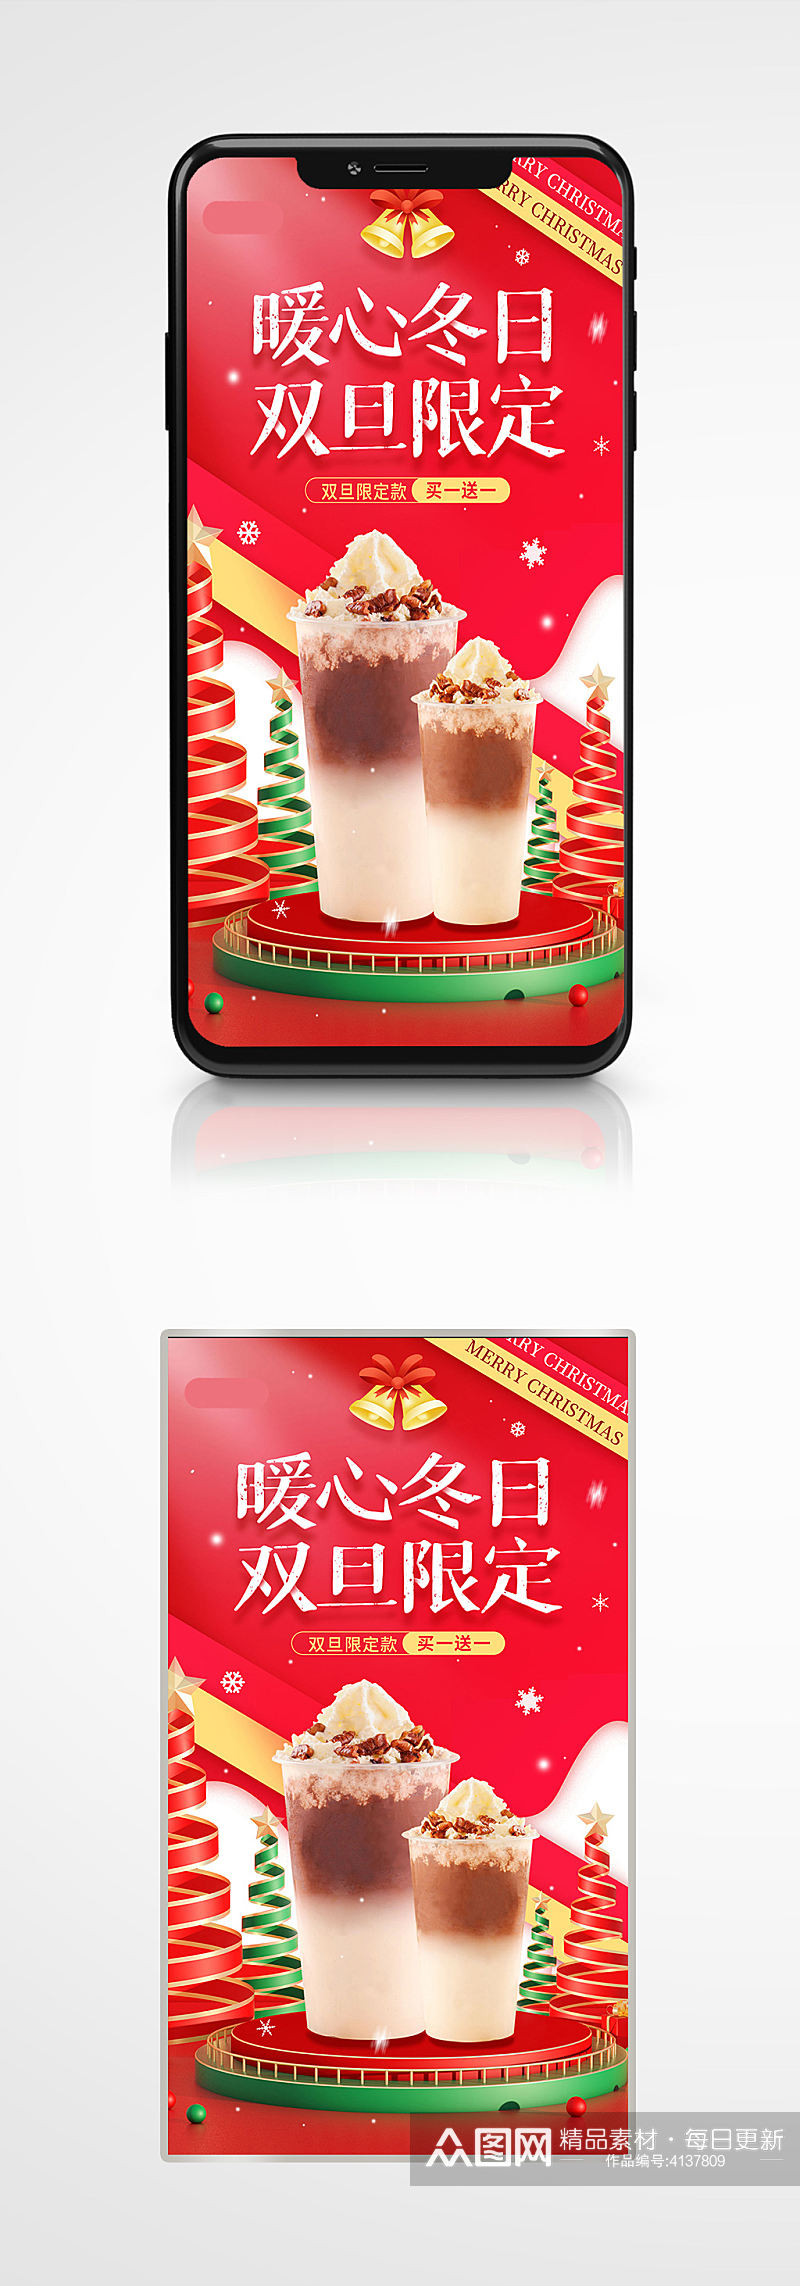 圣诞元旦节日促销奶茶活动宣传新年海报素材